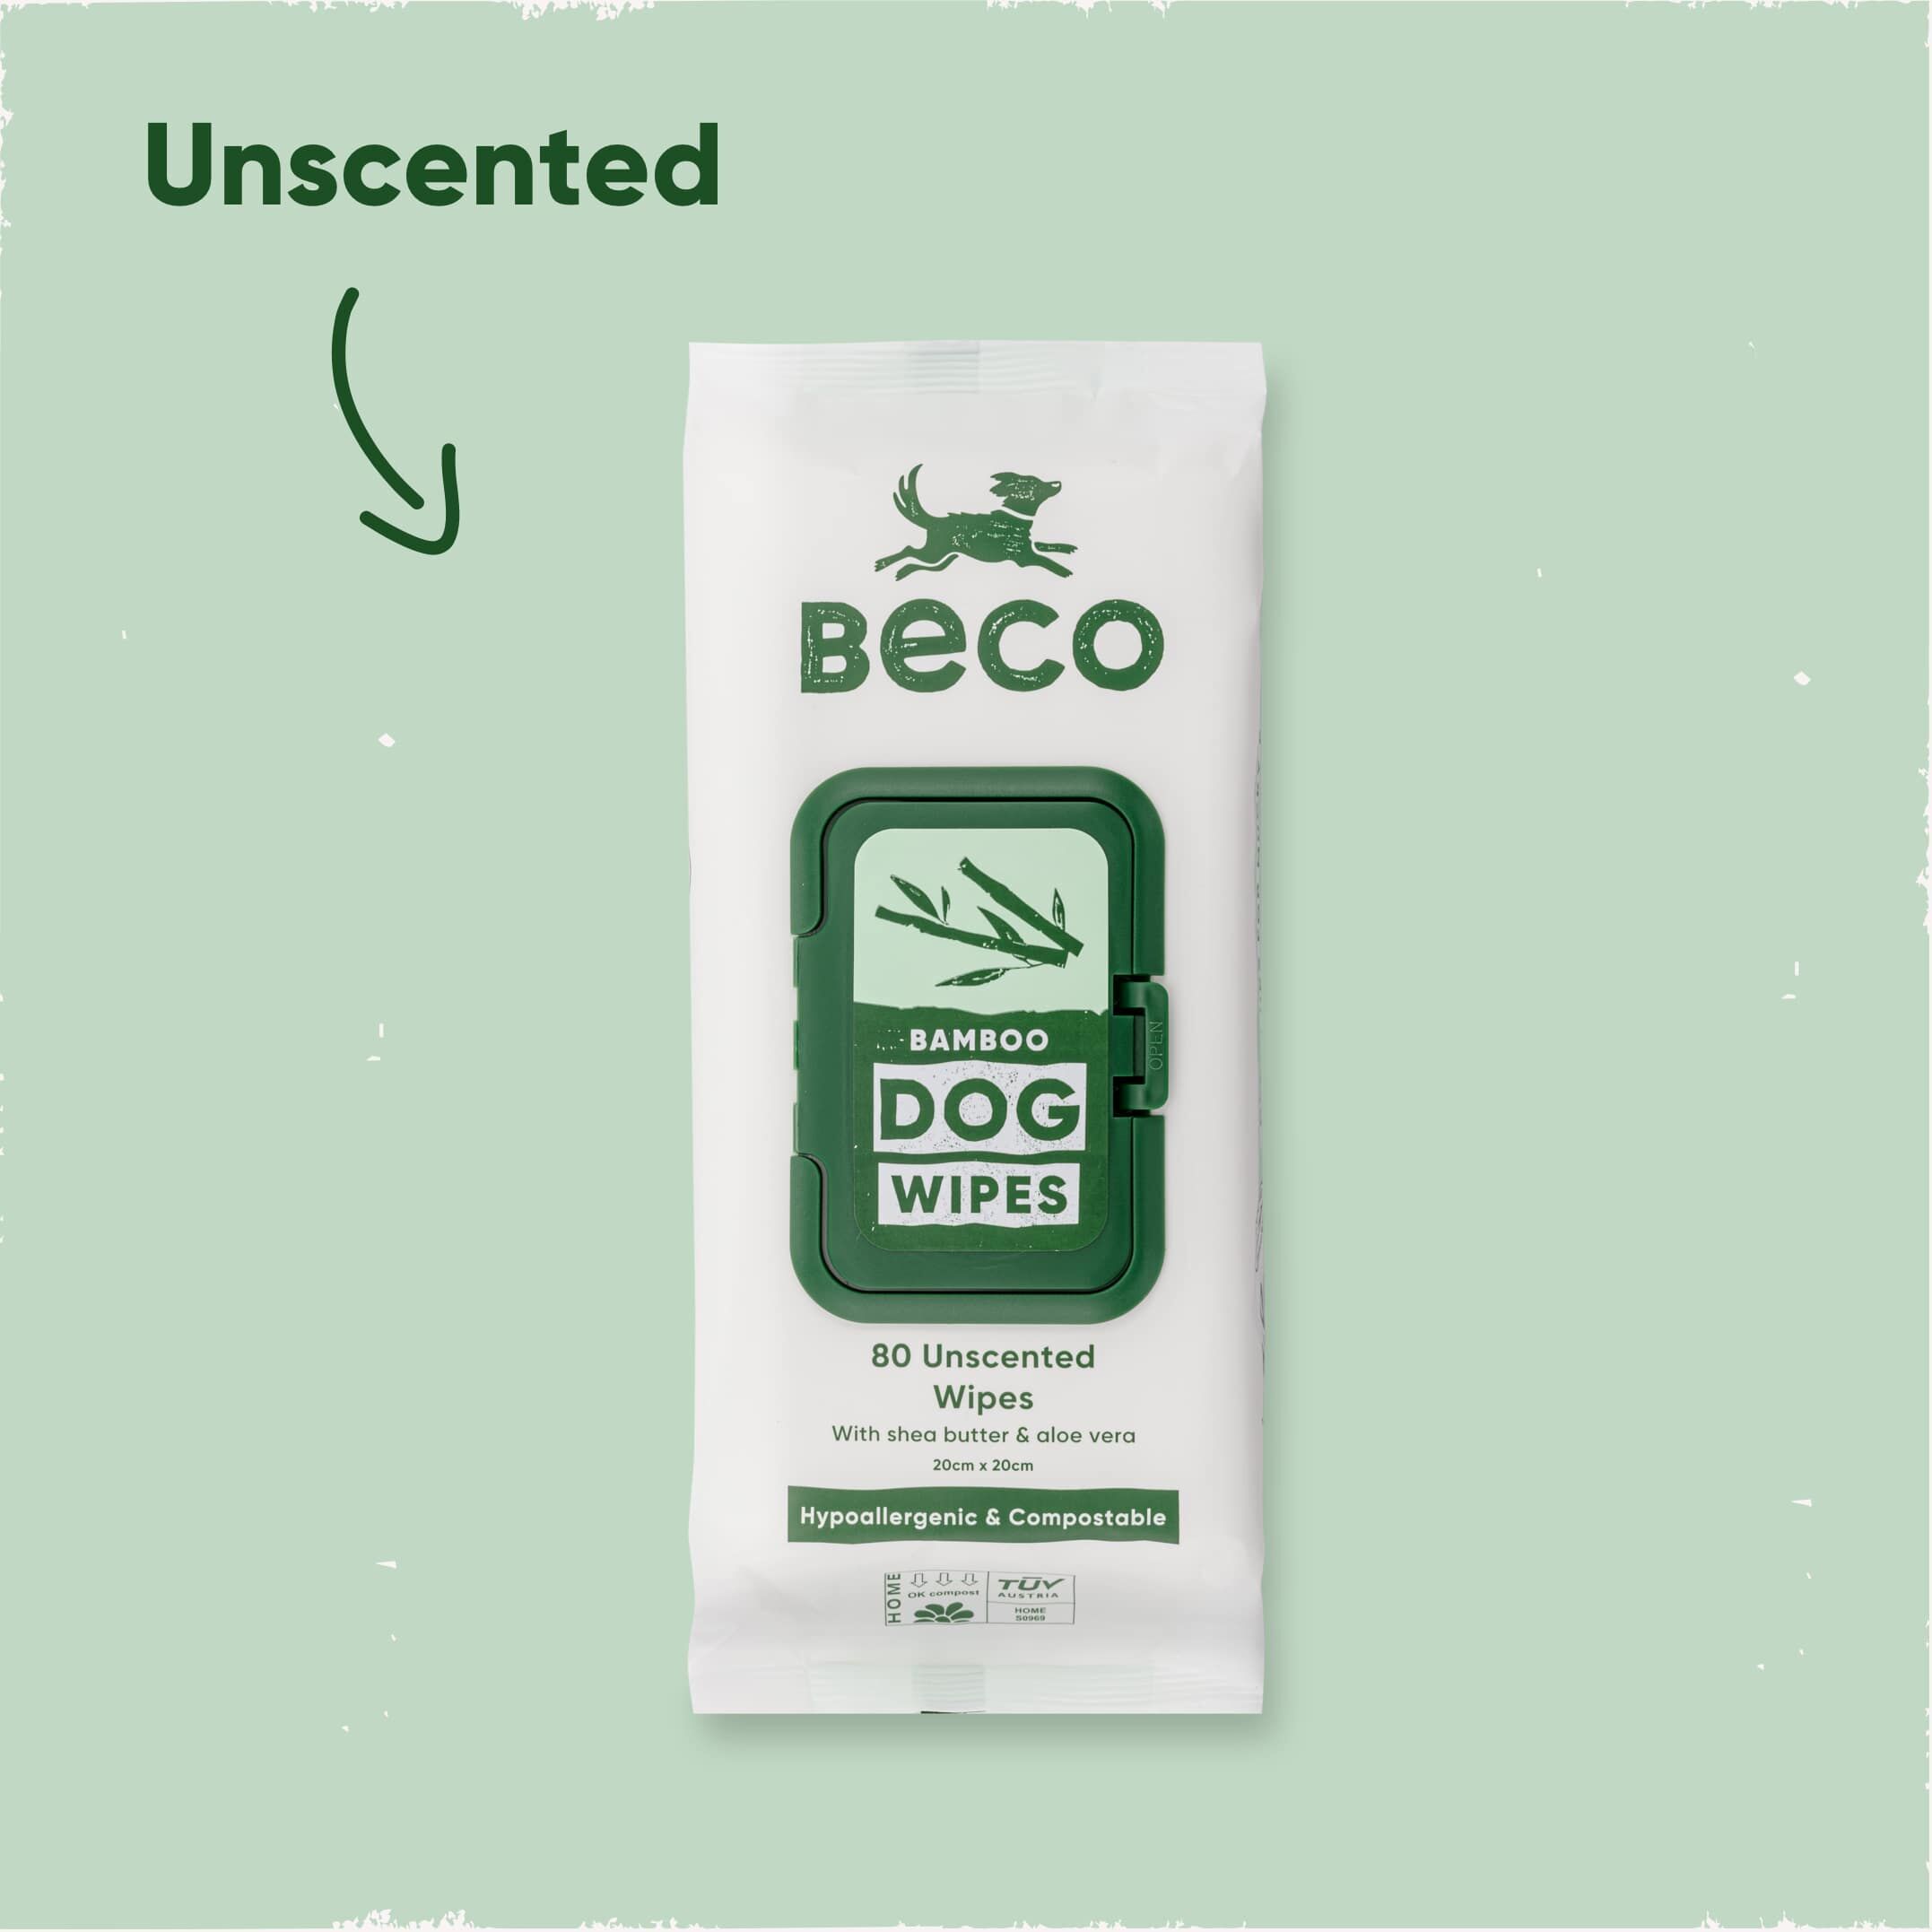 Beco-Reinigungstuecher-Bambus-ohne-Duft-fuer-saubere-Hunde-einzeln-entnehmbar-wieder-verschließbare-Verpackung-Feuchttuecher-auf-gruenem-Hintergrund-BT-75606